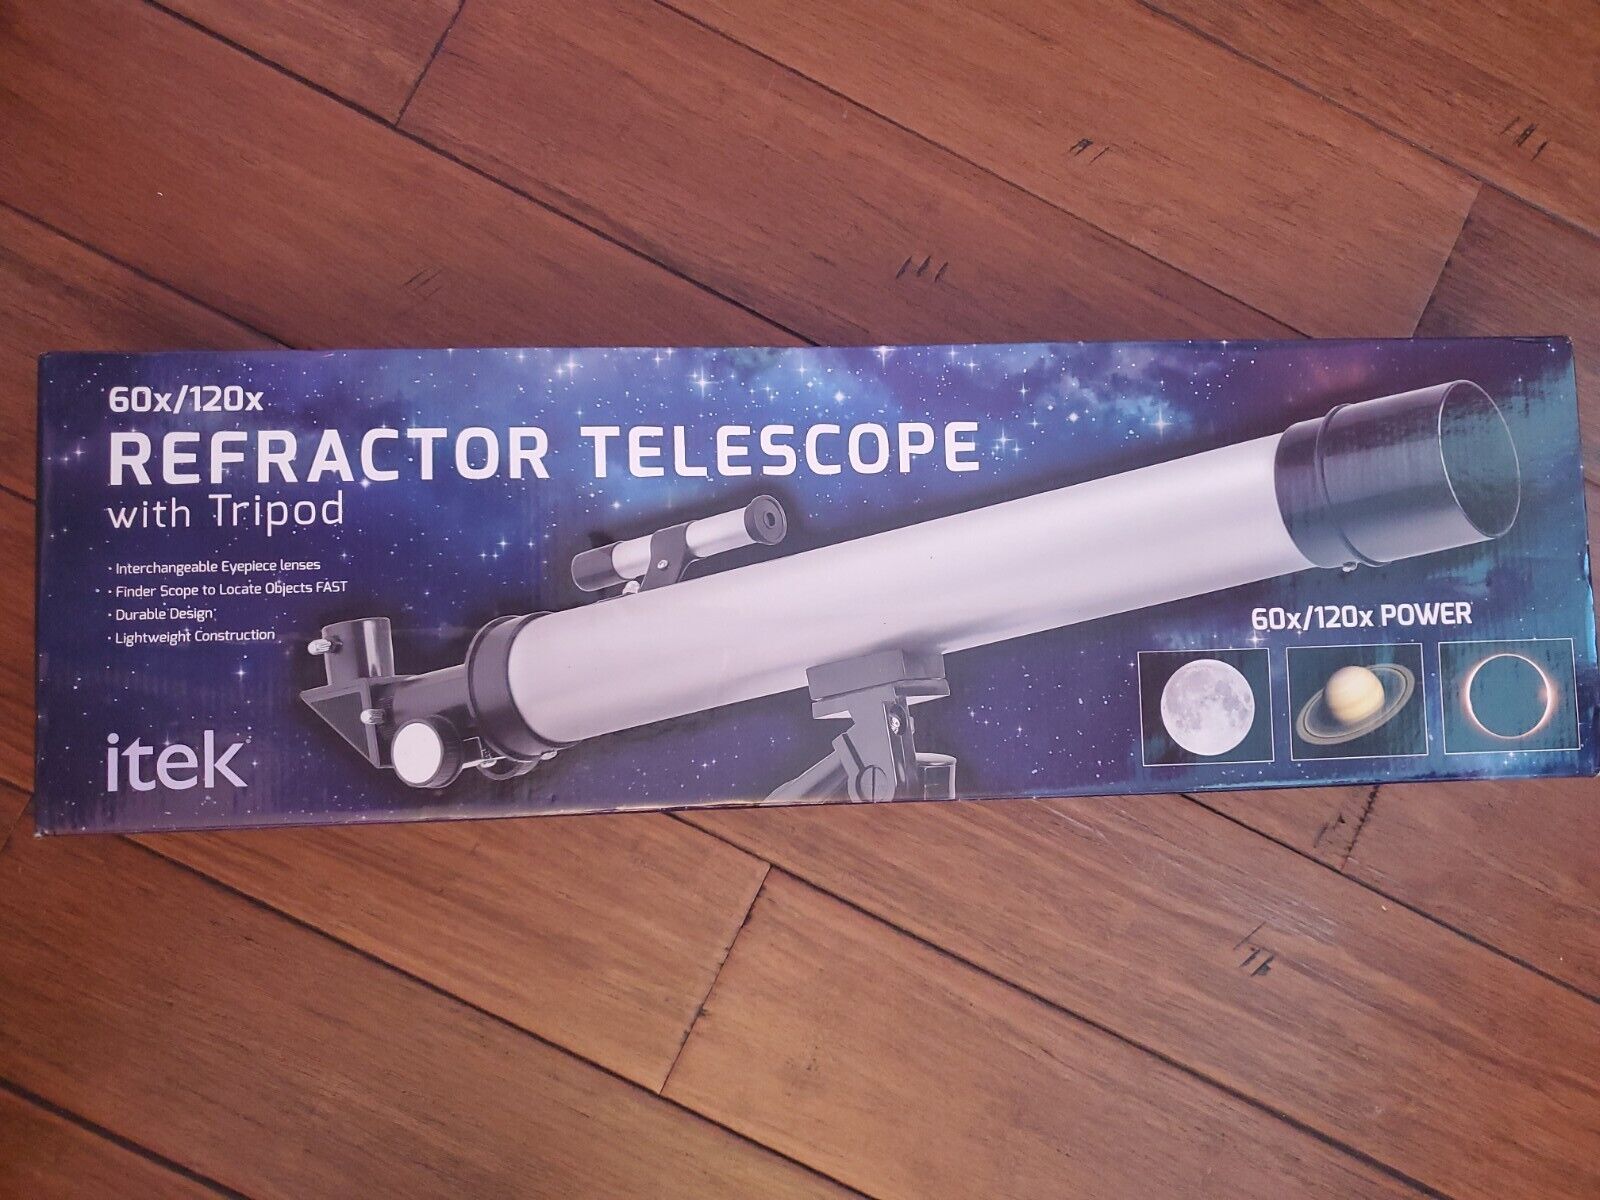 Itek Refractor Telescope 60x/120x refractor telescope new in box with tripod